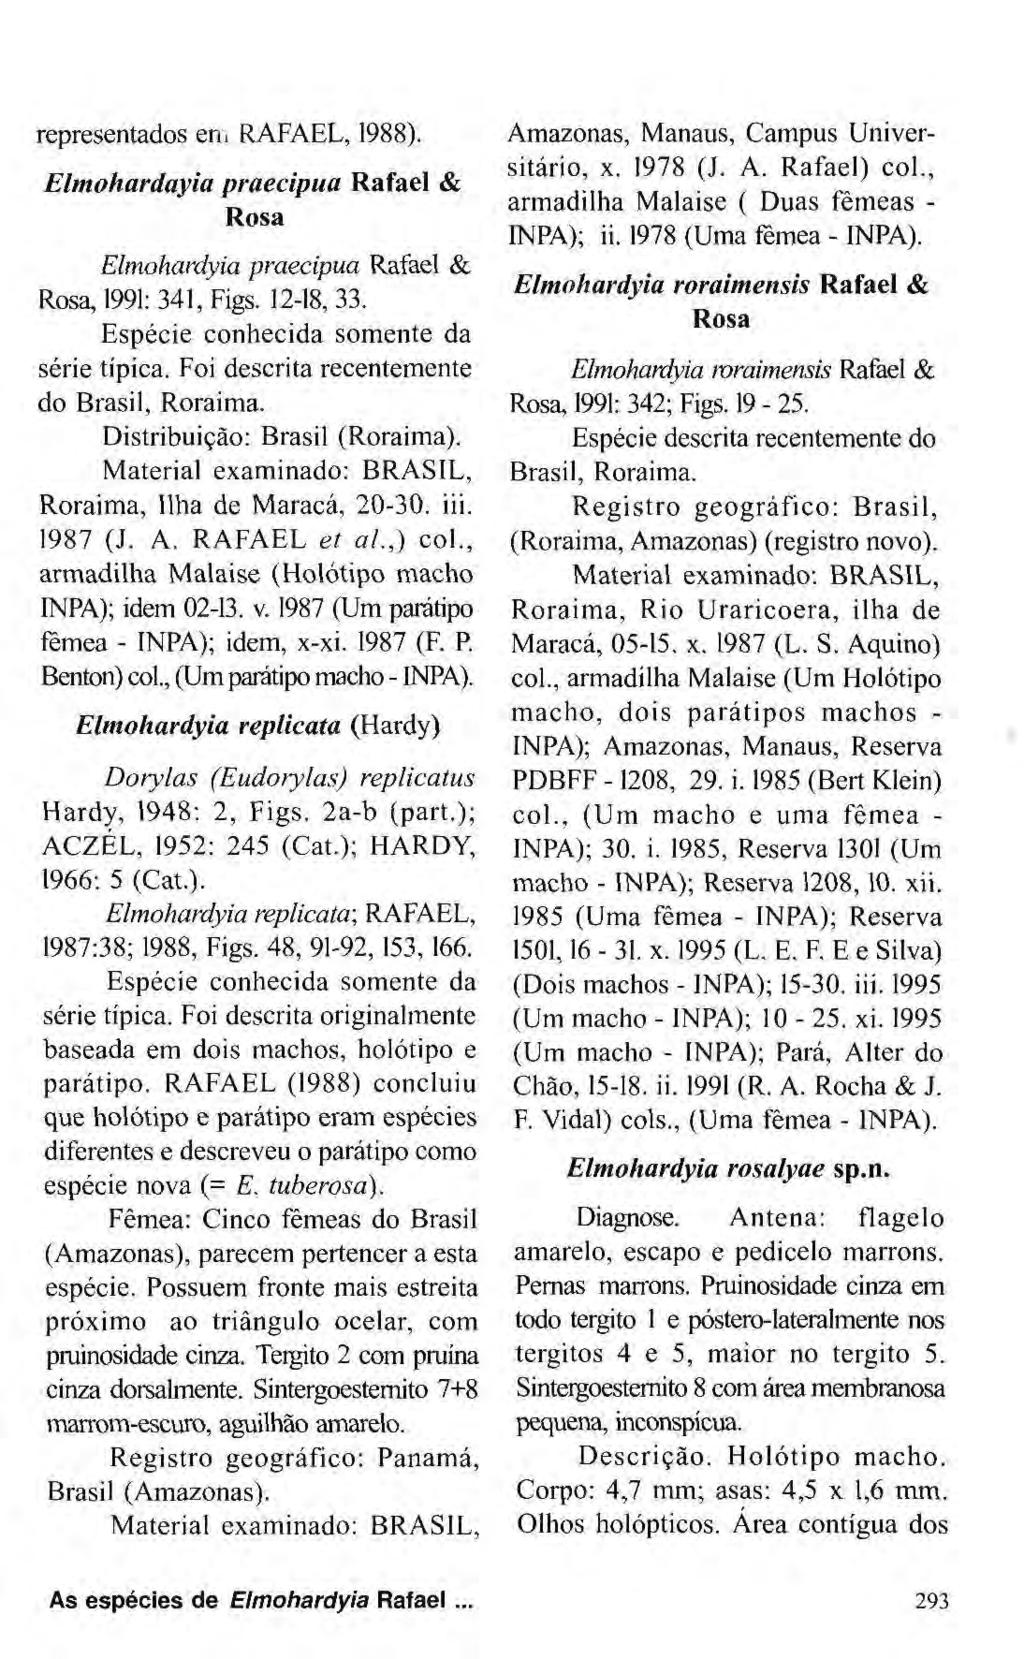 representados em RAFAEL, 1988). Elmohardayia praecipua Rafael & Rosa Elmohardyia praecipua Rafael & Rosa, 1991: 341, Figs. 12-18, 33. Espécie conhecida somente da série típica.